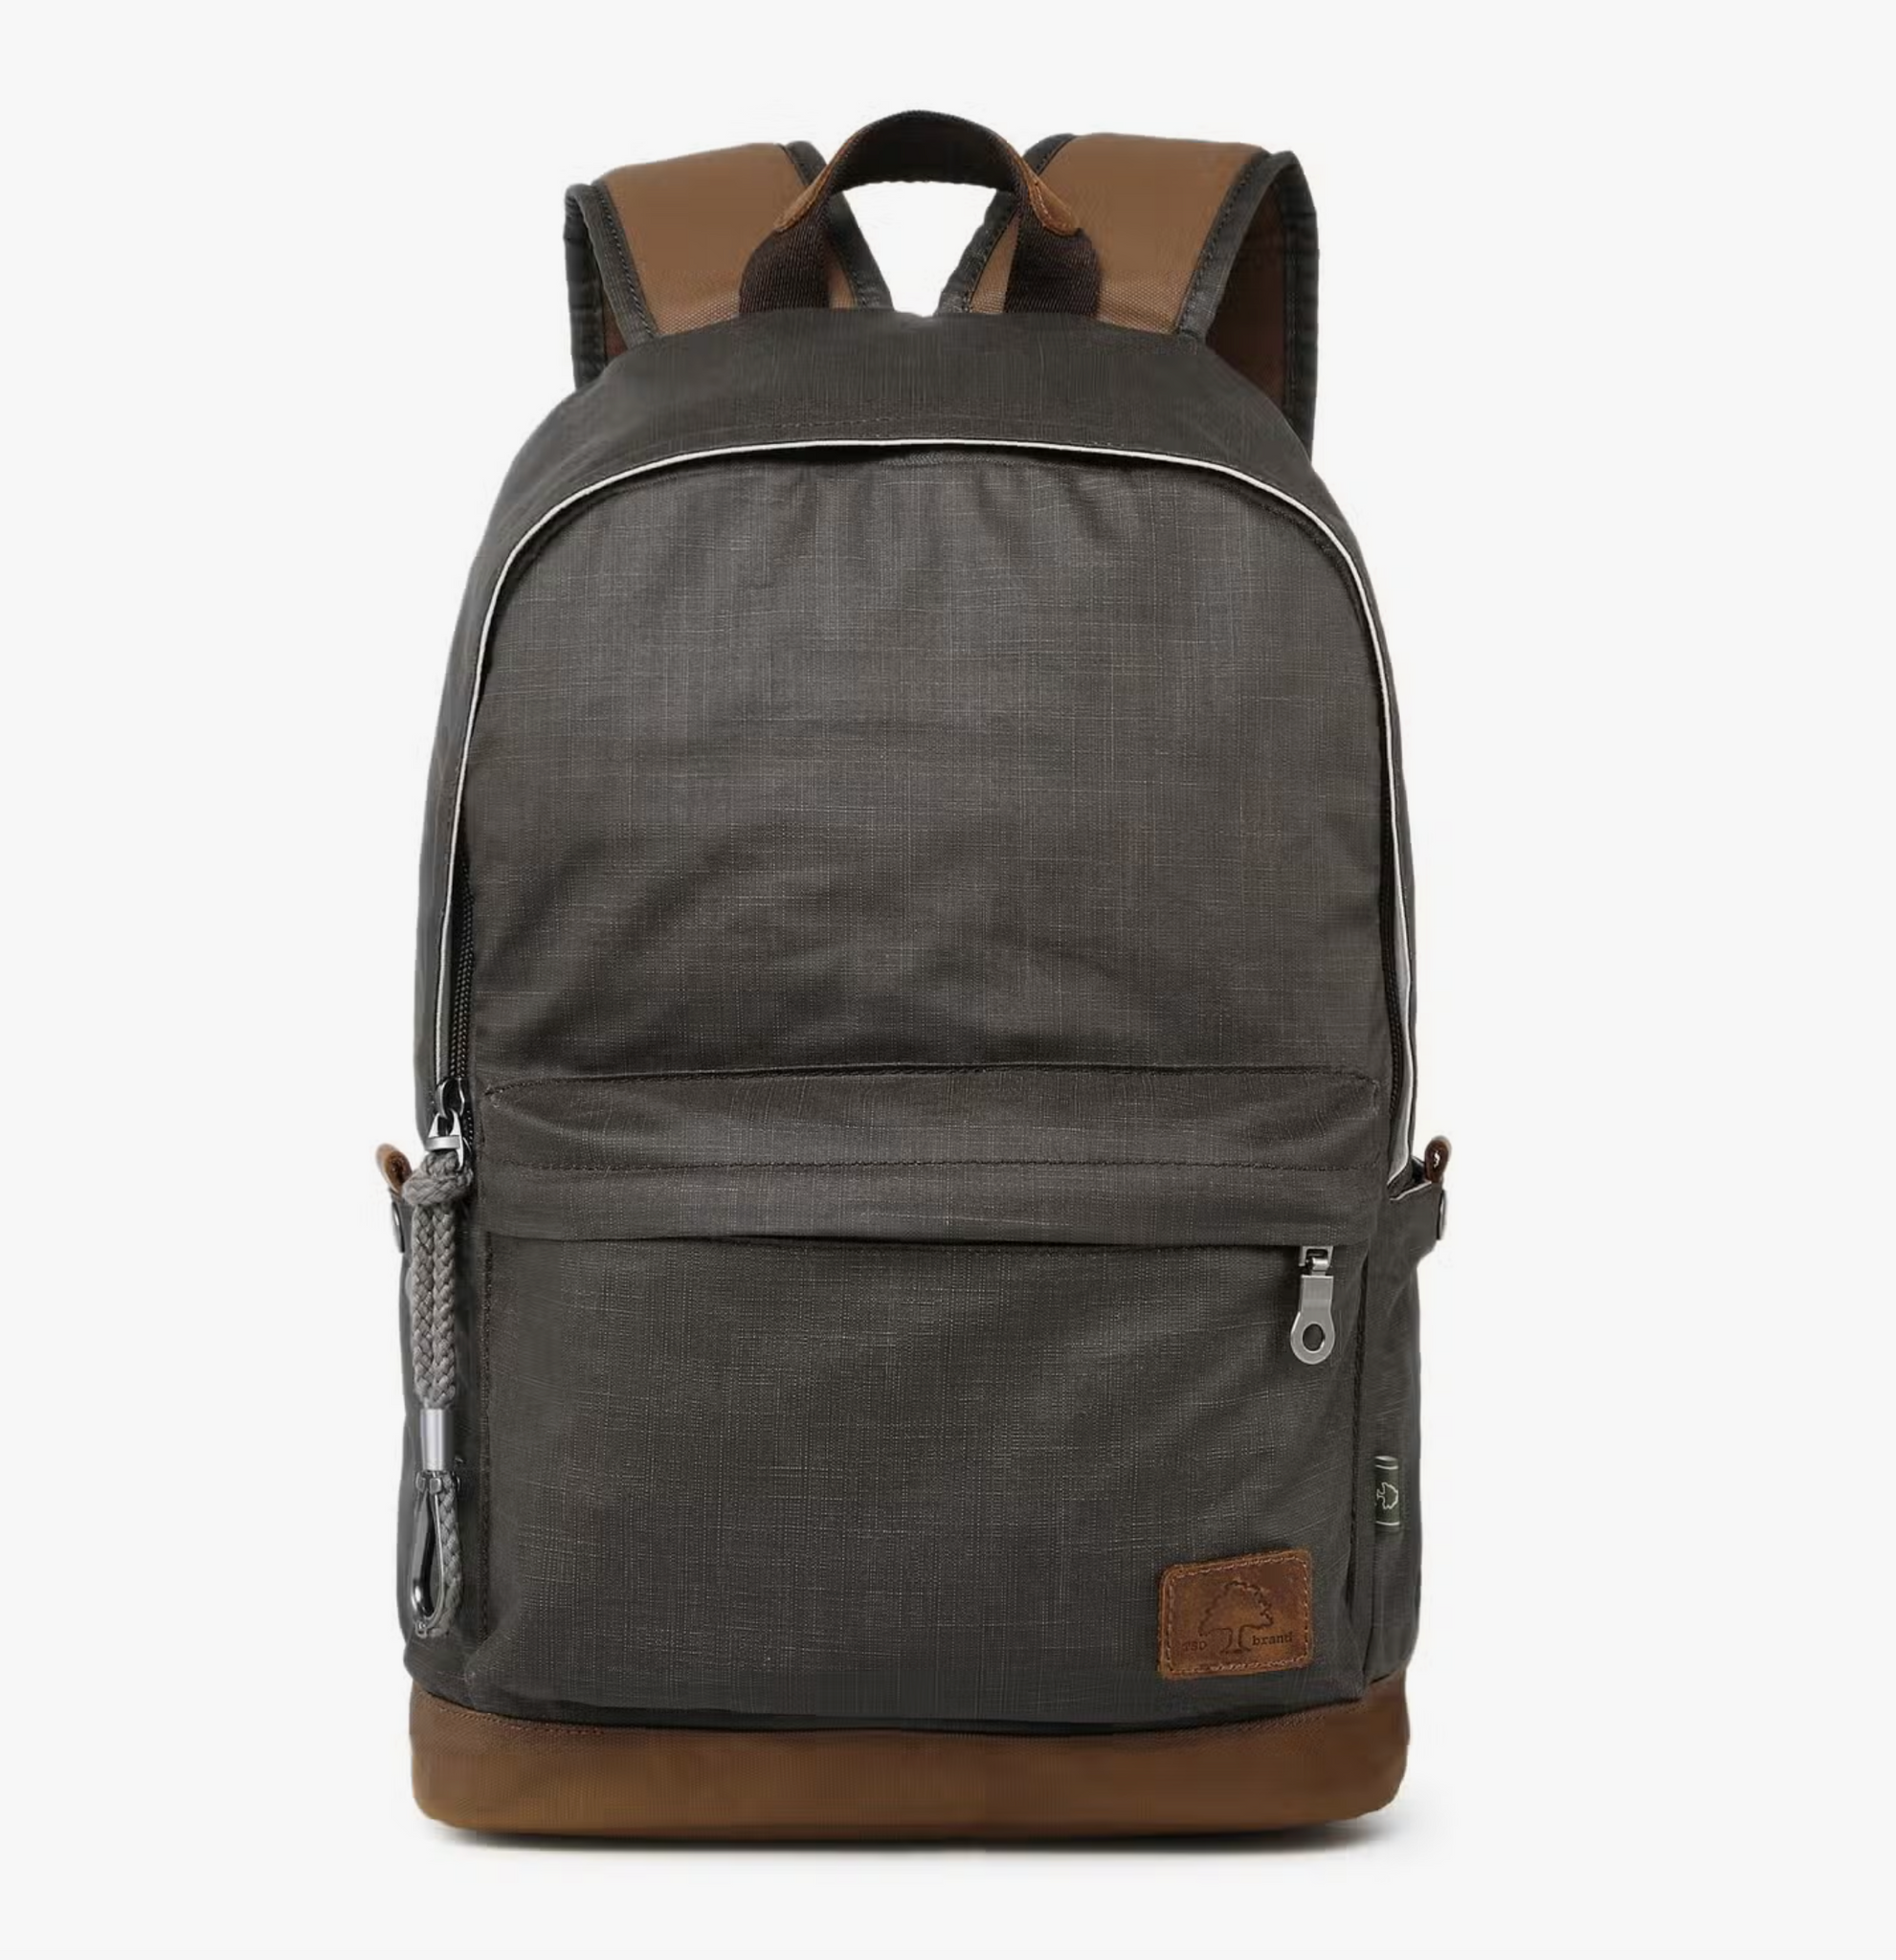 Urban Light Backpack